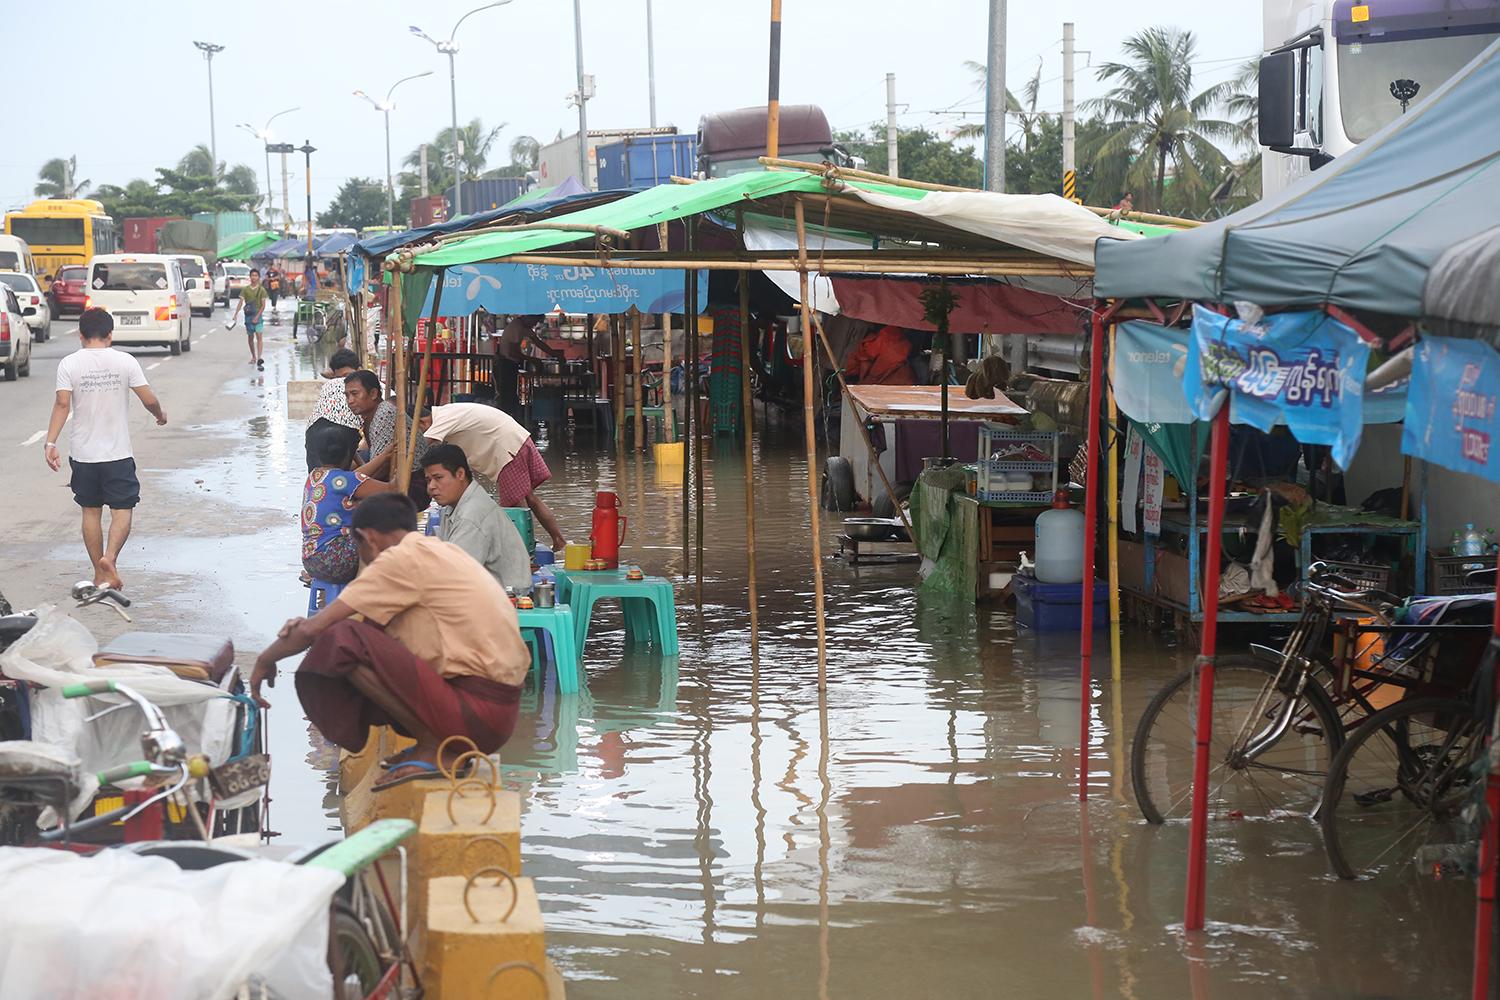 ရန်ကုန်မြို့ ကမ်းနားလမ်း ညစျေးတန်းတွင် မိုးရွာပြီးနောက် စျေးသည်များ ရေထဲတွင် စျေးရောင်းနေရစဉ် (ဓာတ်ပုံ-ကြည်နိုင်)